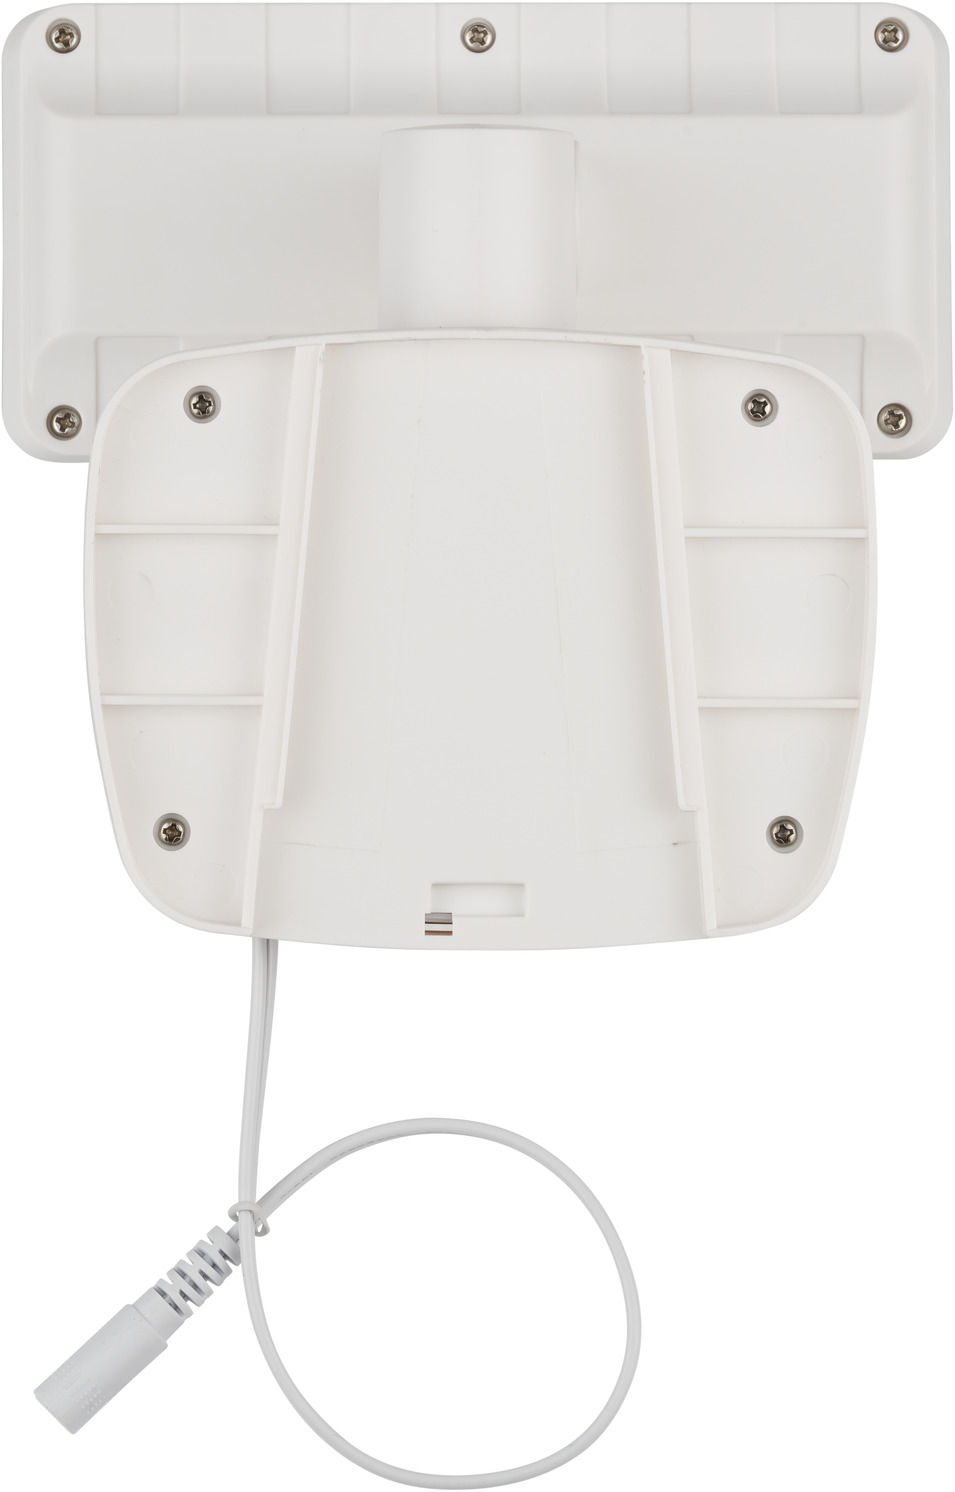 Solar LED Light SOL 800 IP44 with infrared motion detector white |  brennenstuhl®